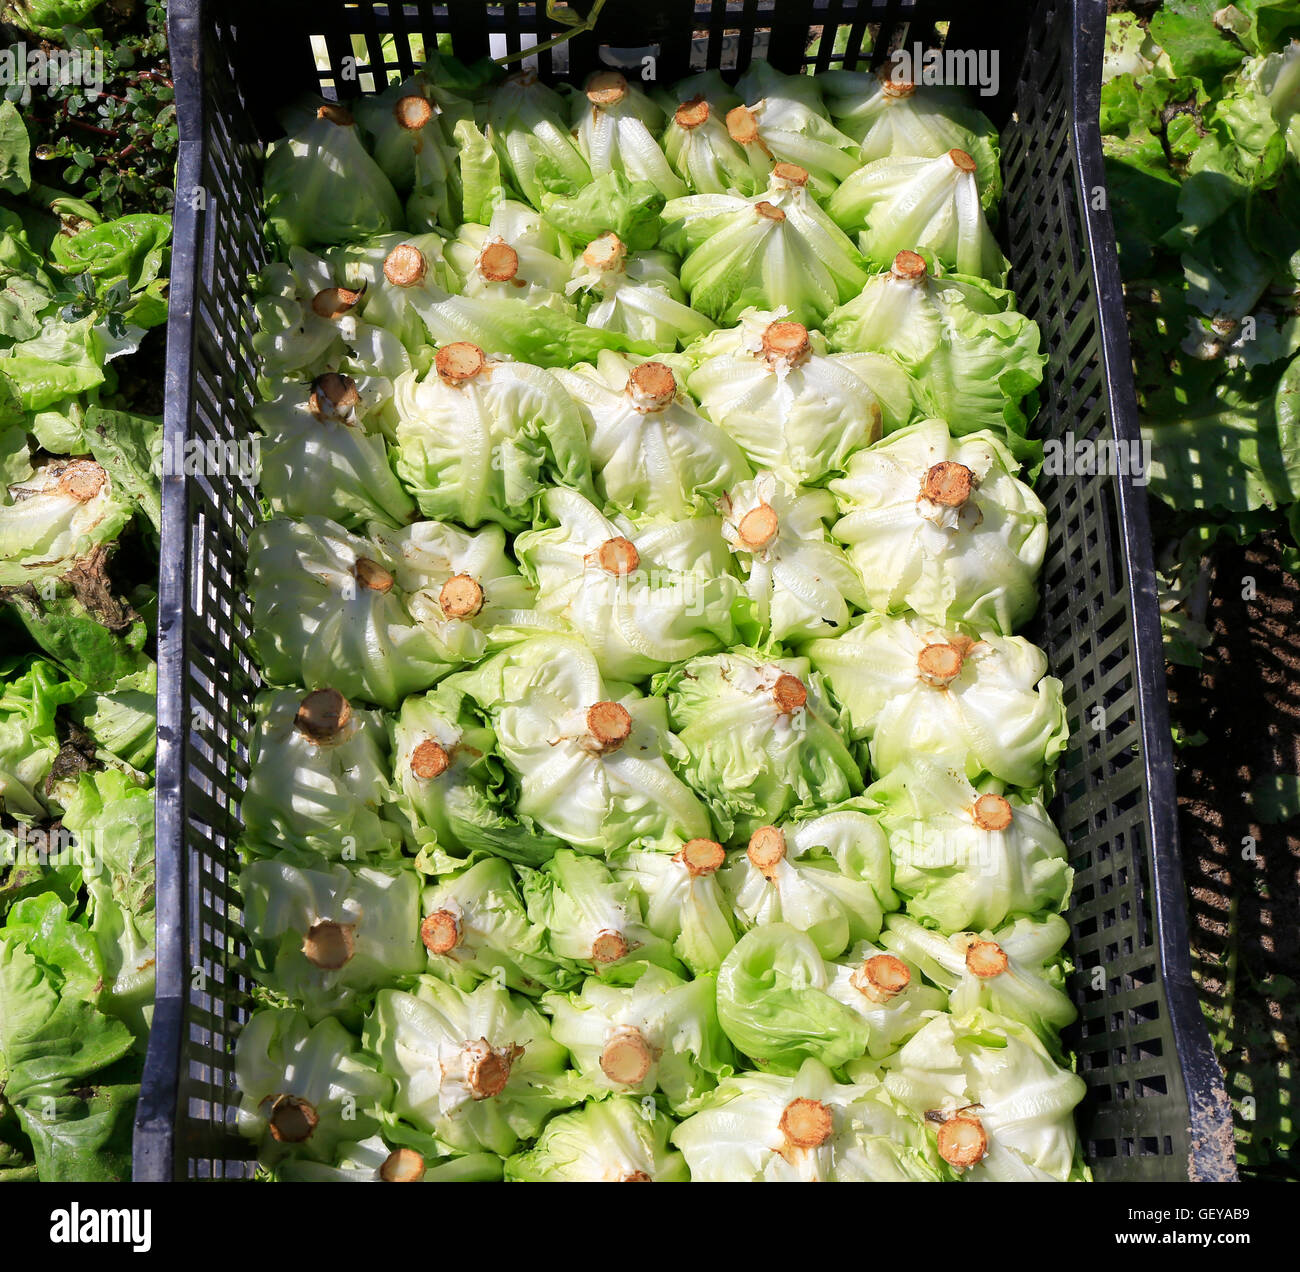 Harvesting lettuce Stock Photo